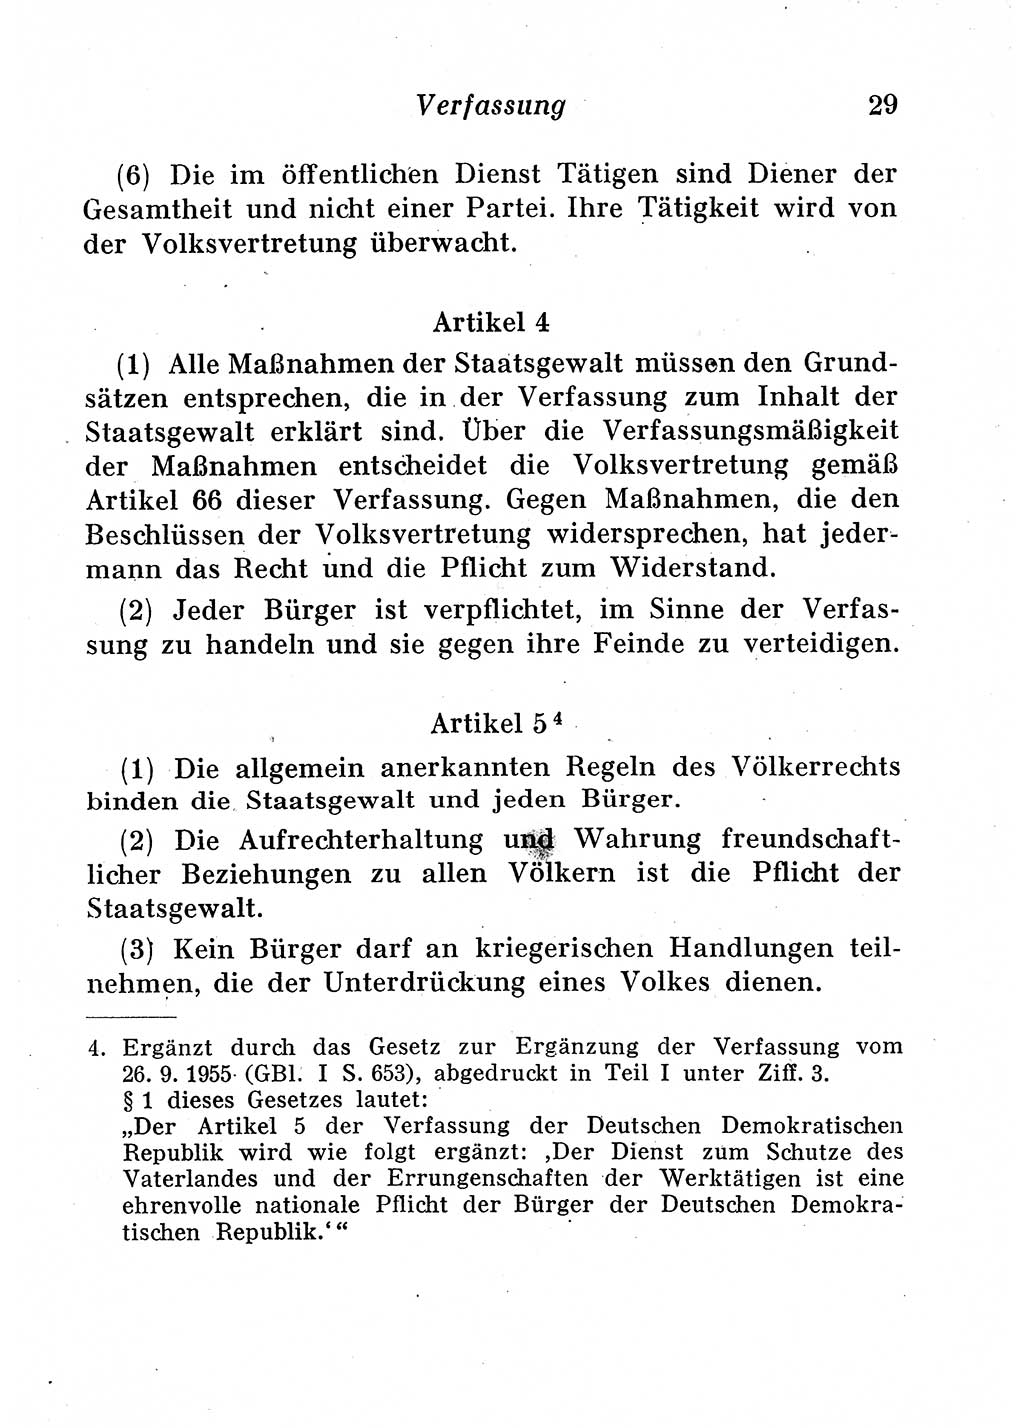 Staats- und verwaltungsrechtliche Gesetze der Deutschen Demokratischen Republik (DDR) 1958, Seite 29 (StVerwR Ges. DDR 1958, S. 29)